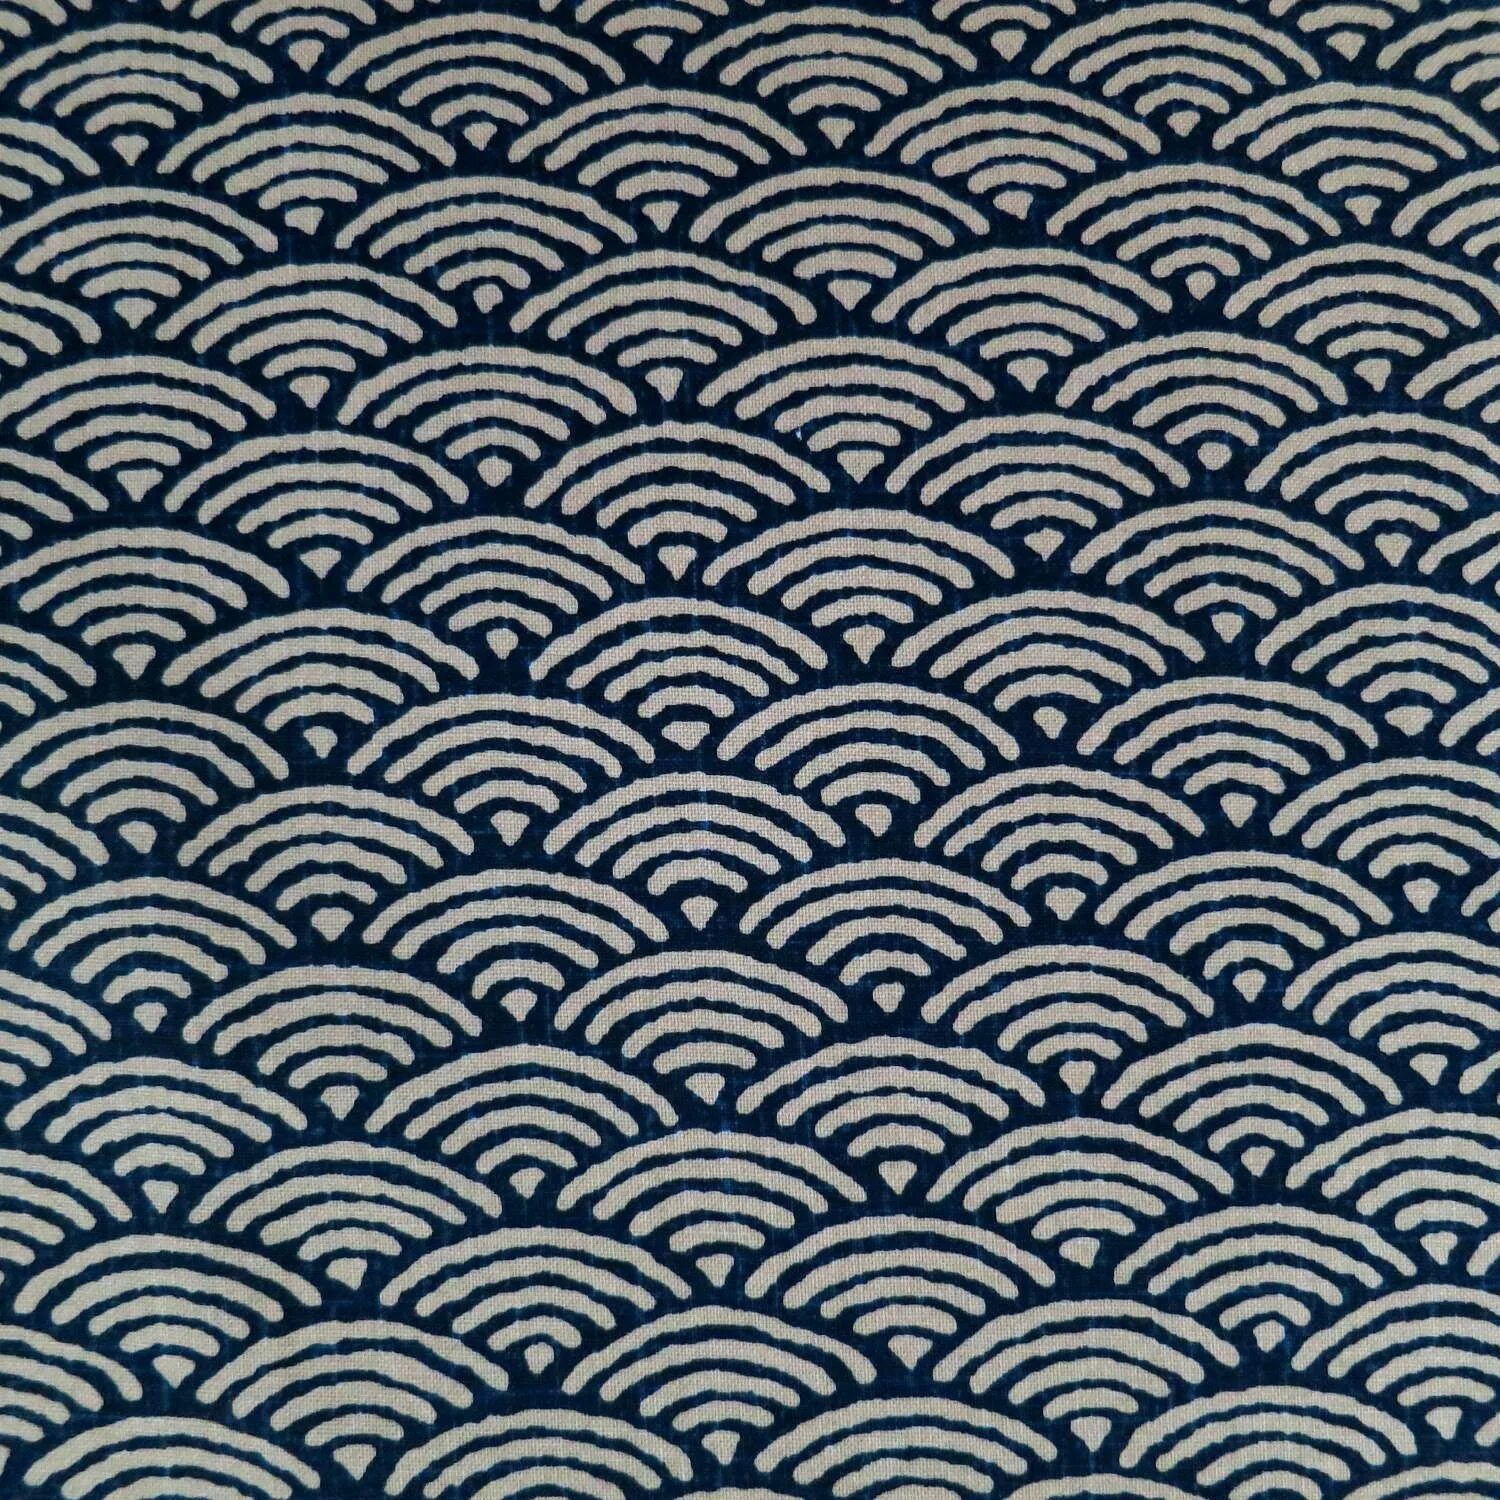 Ethnic wave. Японский орнамент. Бесшовный узор. Японский геометрический орнамент. Традиционный японский орнамент.